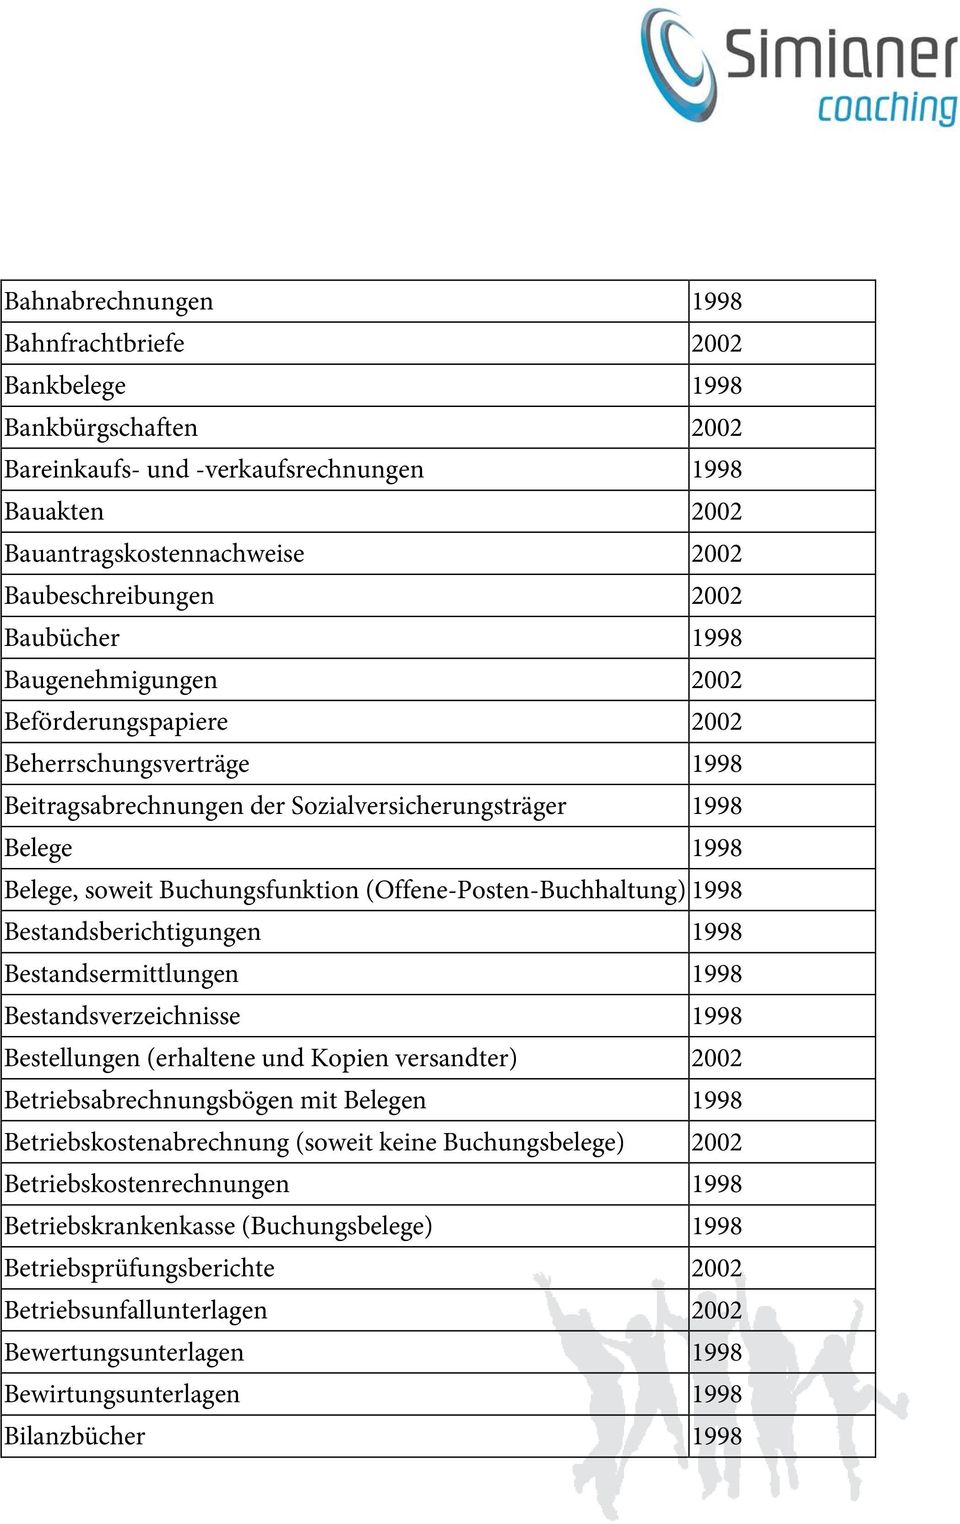 (Offene-Posten-Buchhaltung) 1998 Bestandsberichtigungen 1998 Bestandsermittlungen 1998 Bestandsverzeichnisse 1998 Bestellungen (erhaltene und Kopien versandter) 2002 Betriebsabrechnungsbögen mit